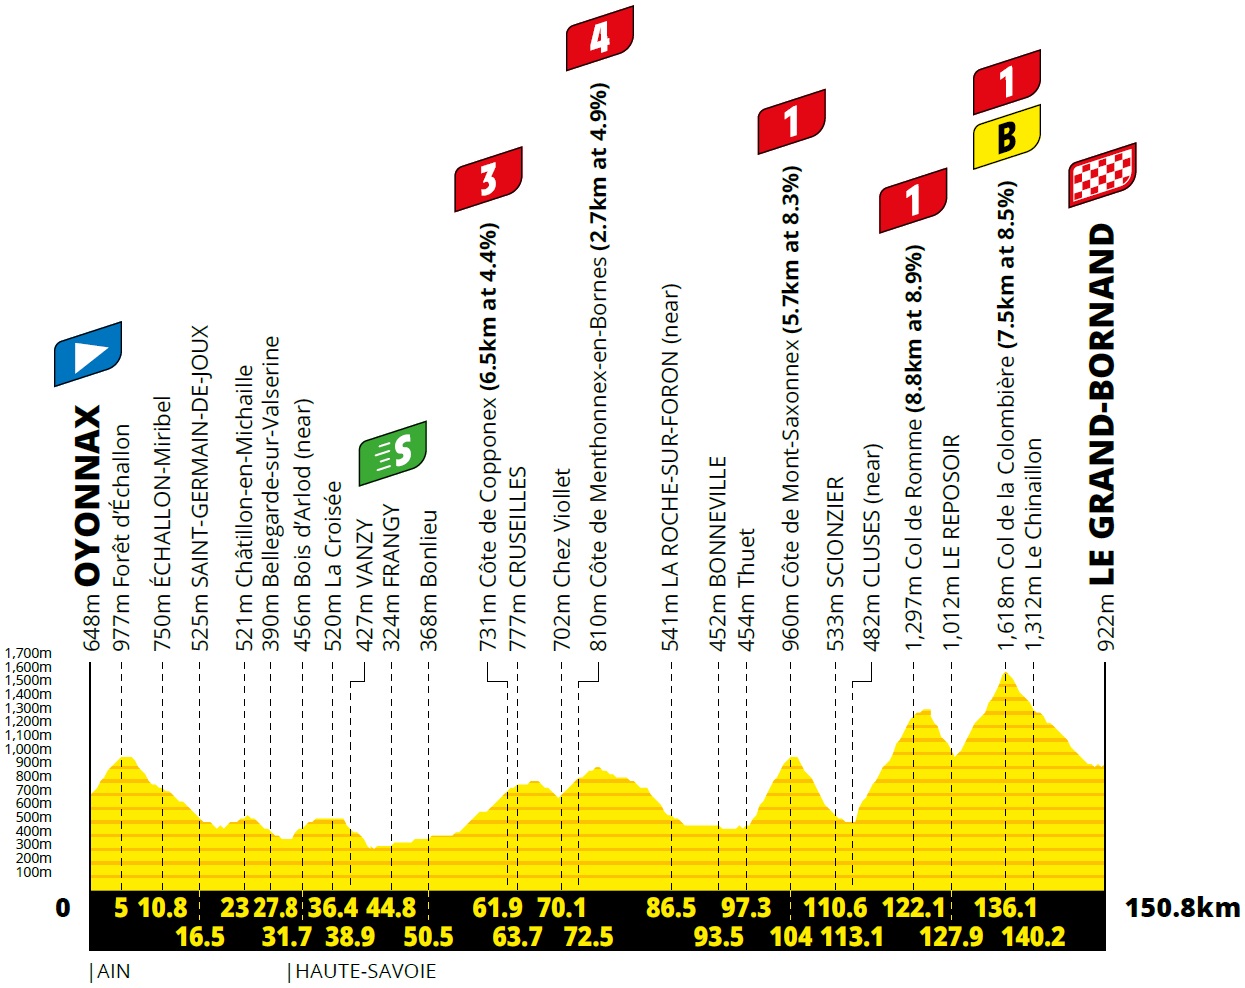 Vorschau & Favoriten Tour de France 2021 - Etappe 8